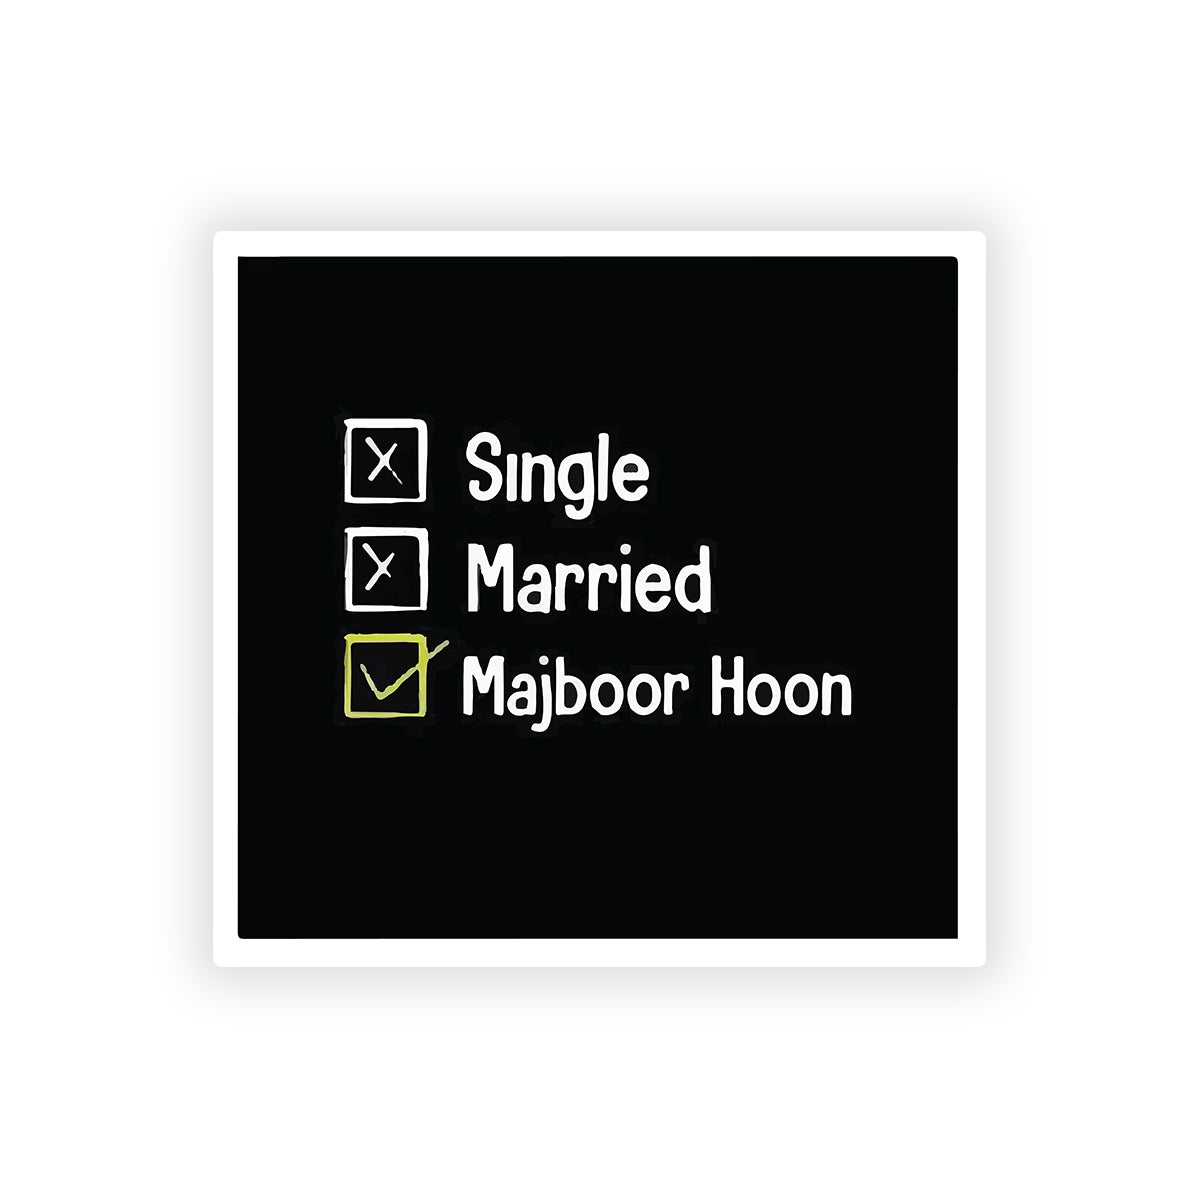 Single married majboor hoon